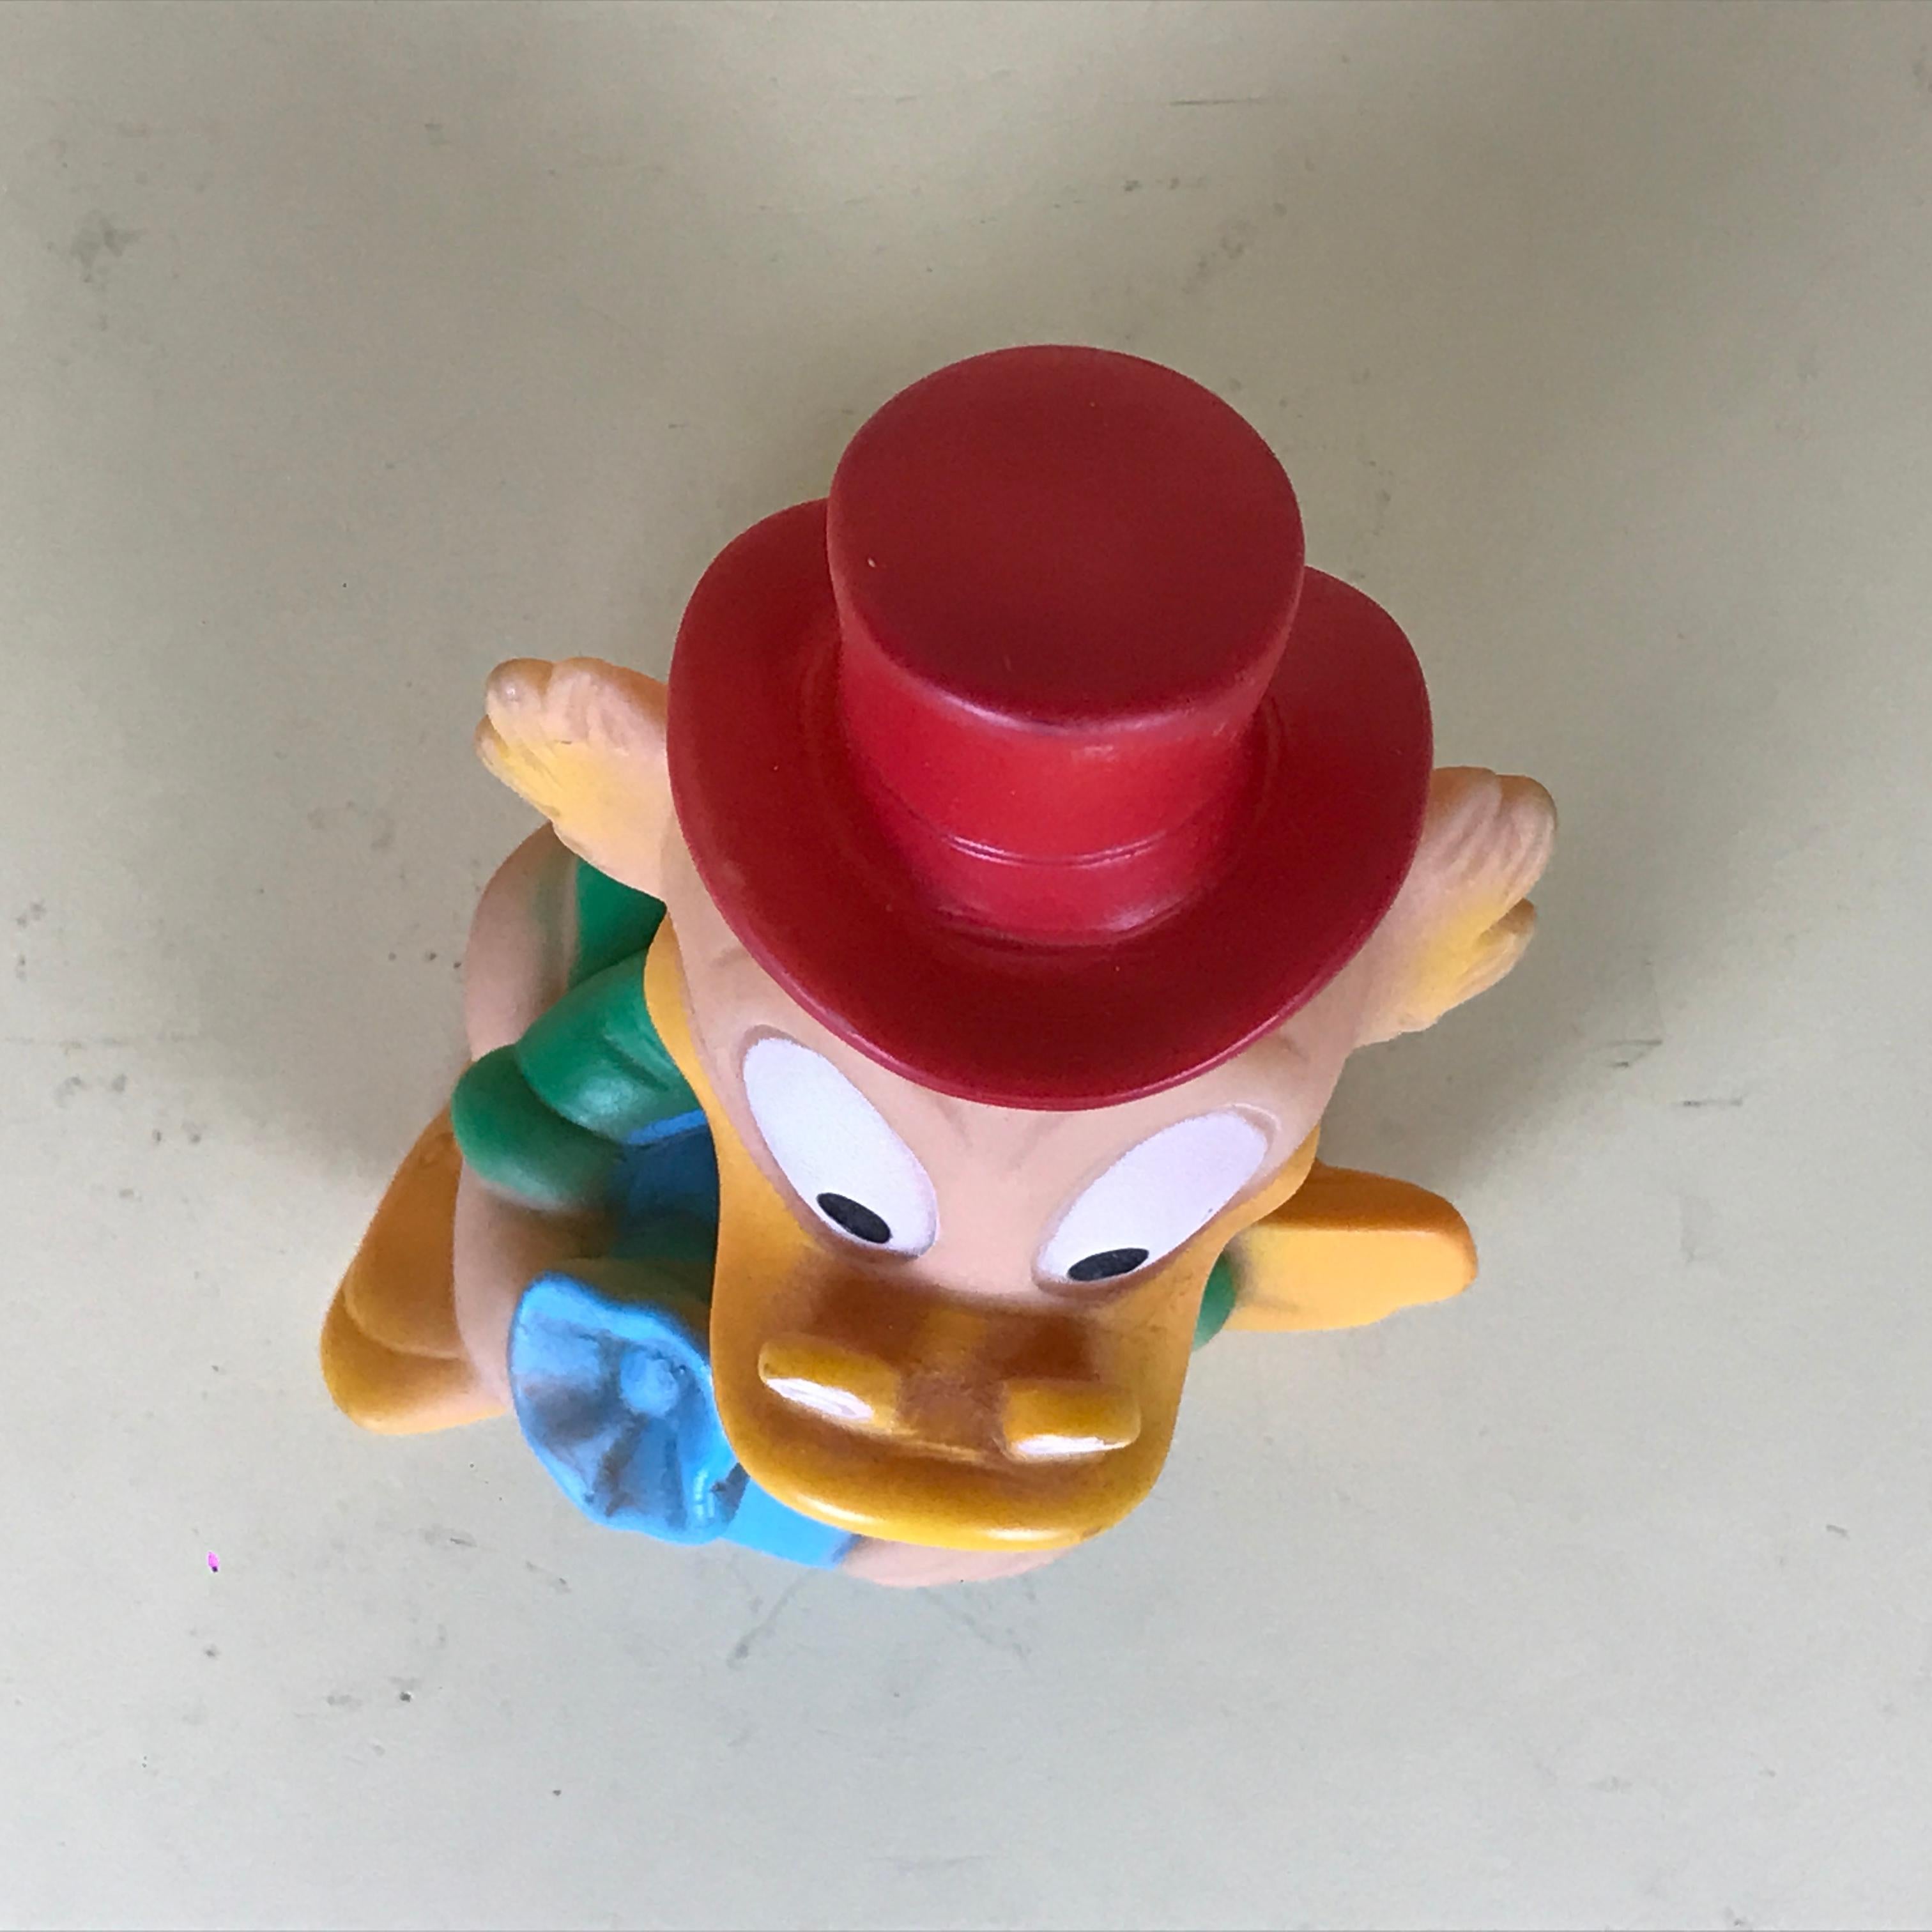 1960s Vintage Uncle Scrooge Squeak Toy Made in Spain by Jugasa for Disney 4